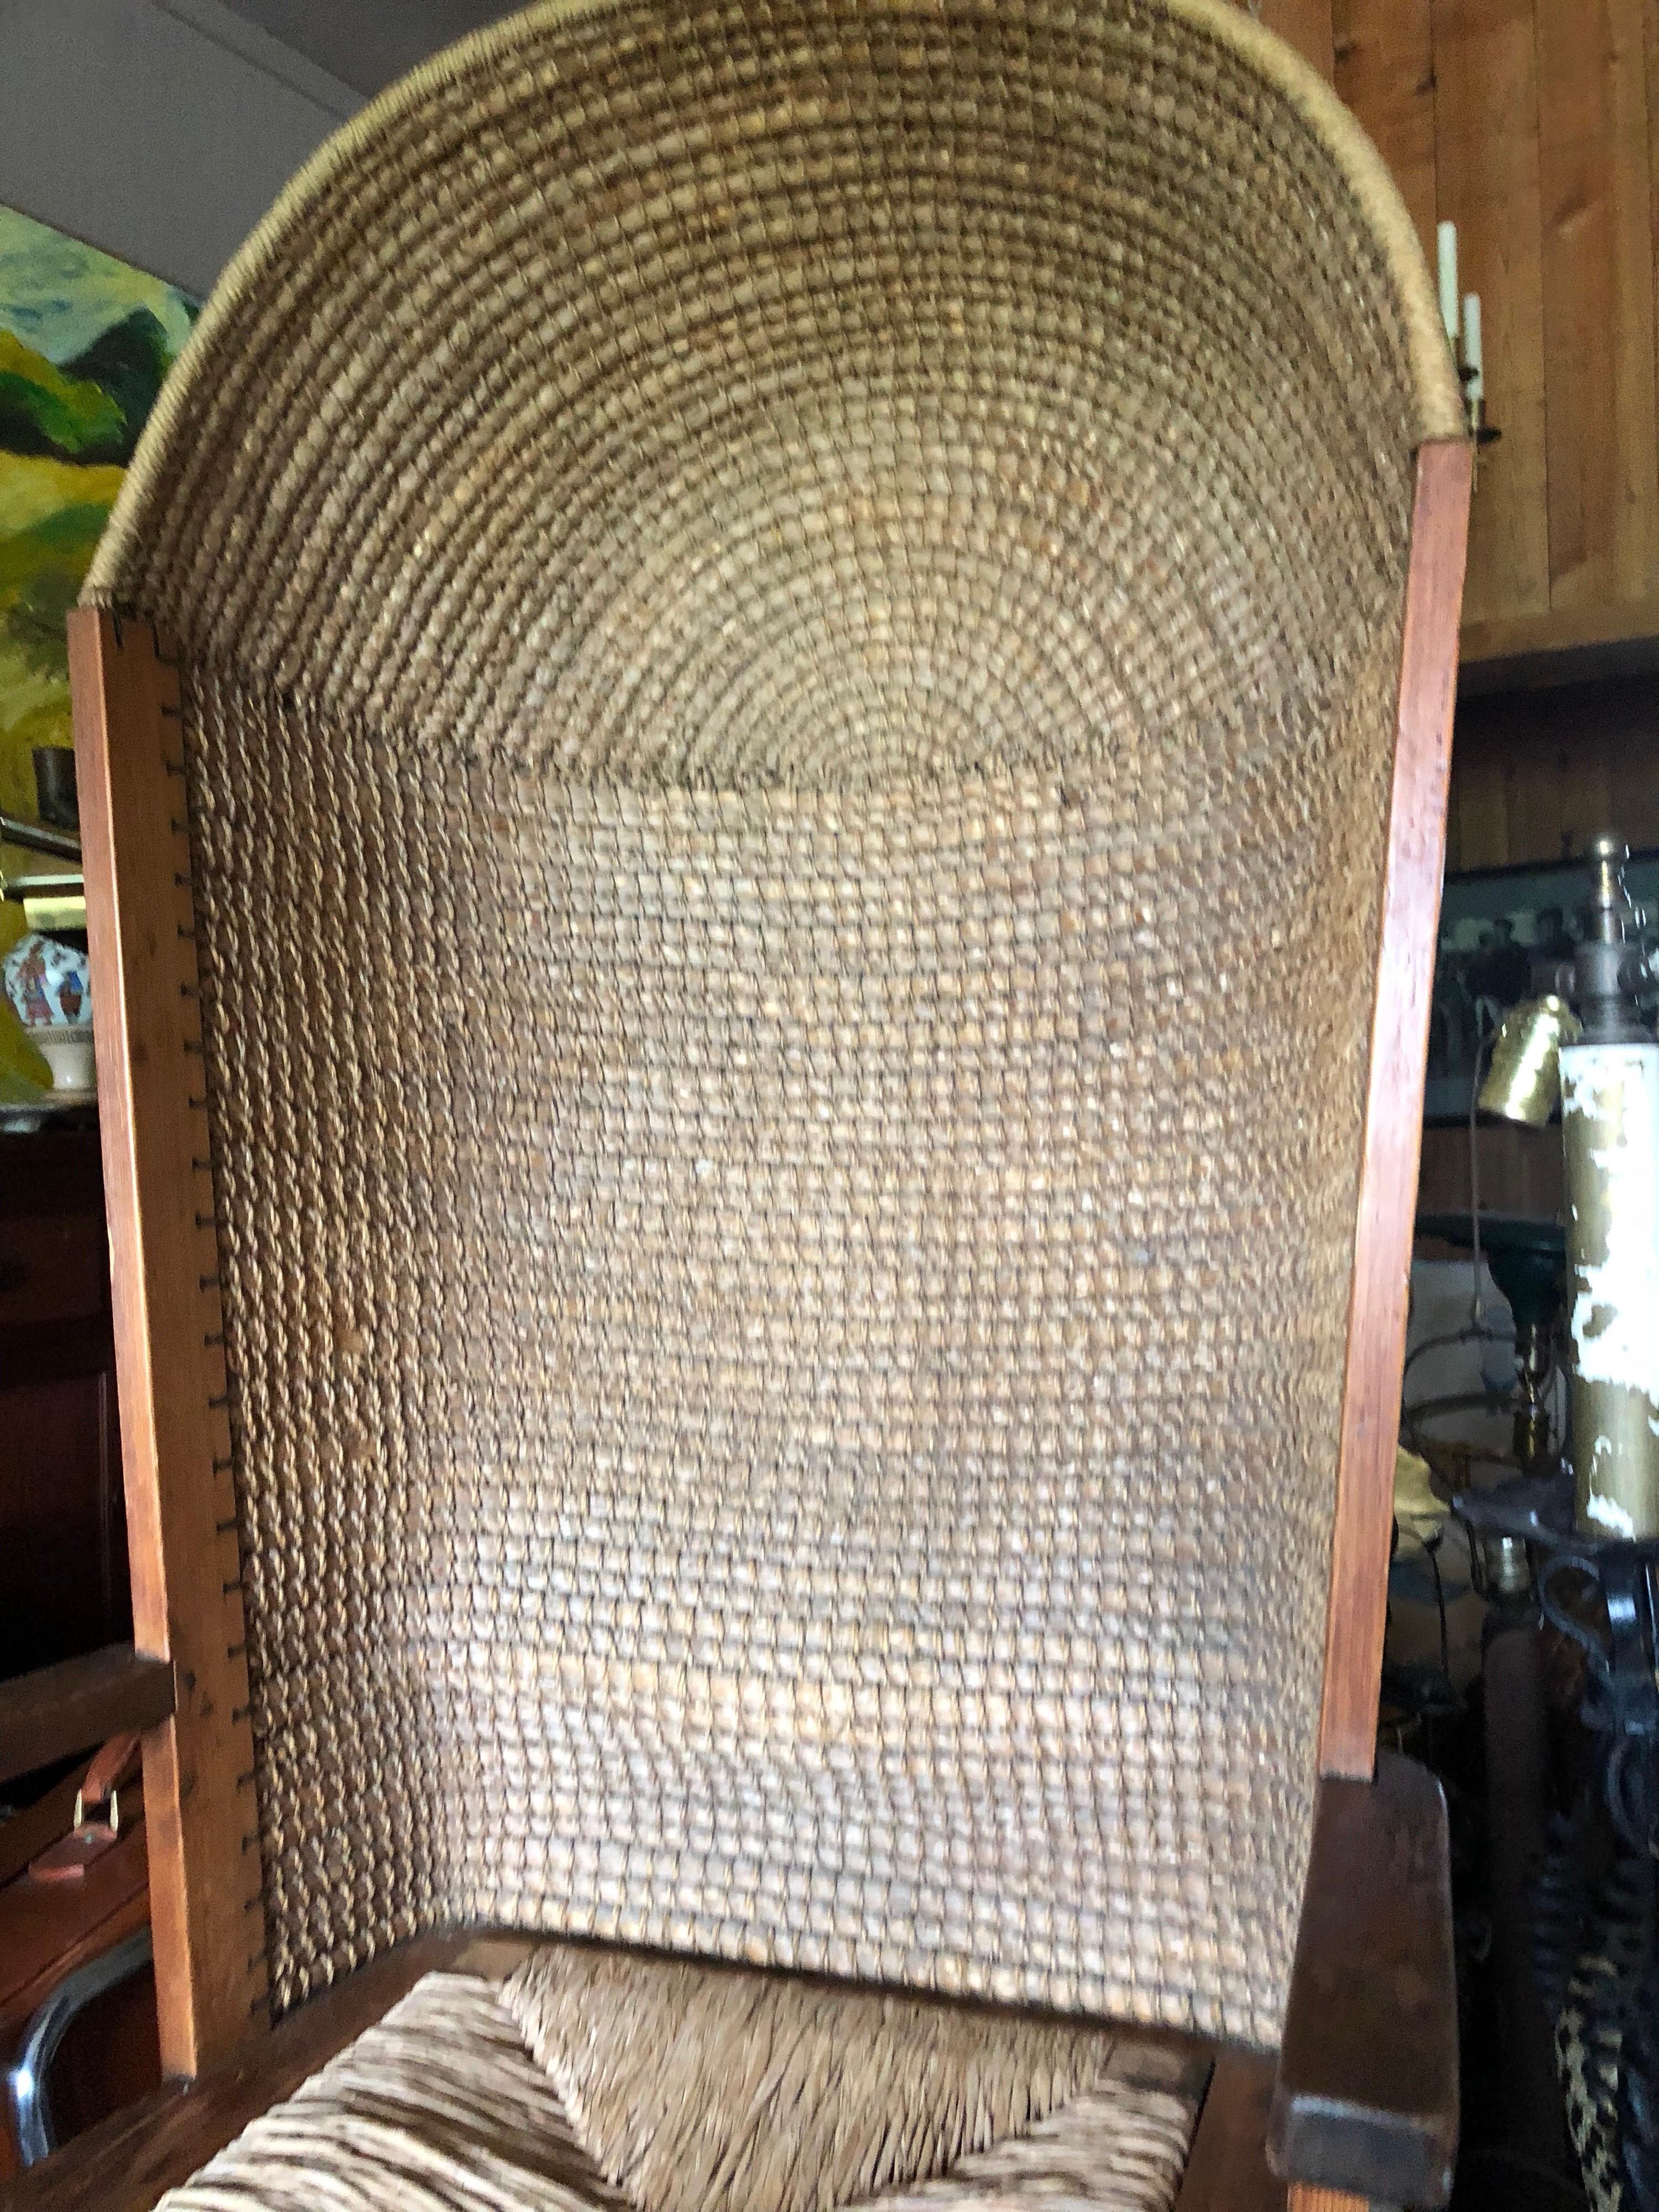 Insolite chaise écossaise à capuchon en pin et en jonc tressé du XIXe siècle, originaire des îles Orcades.